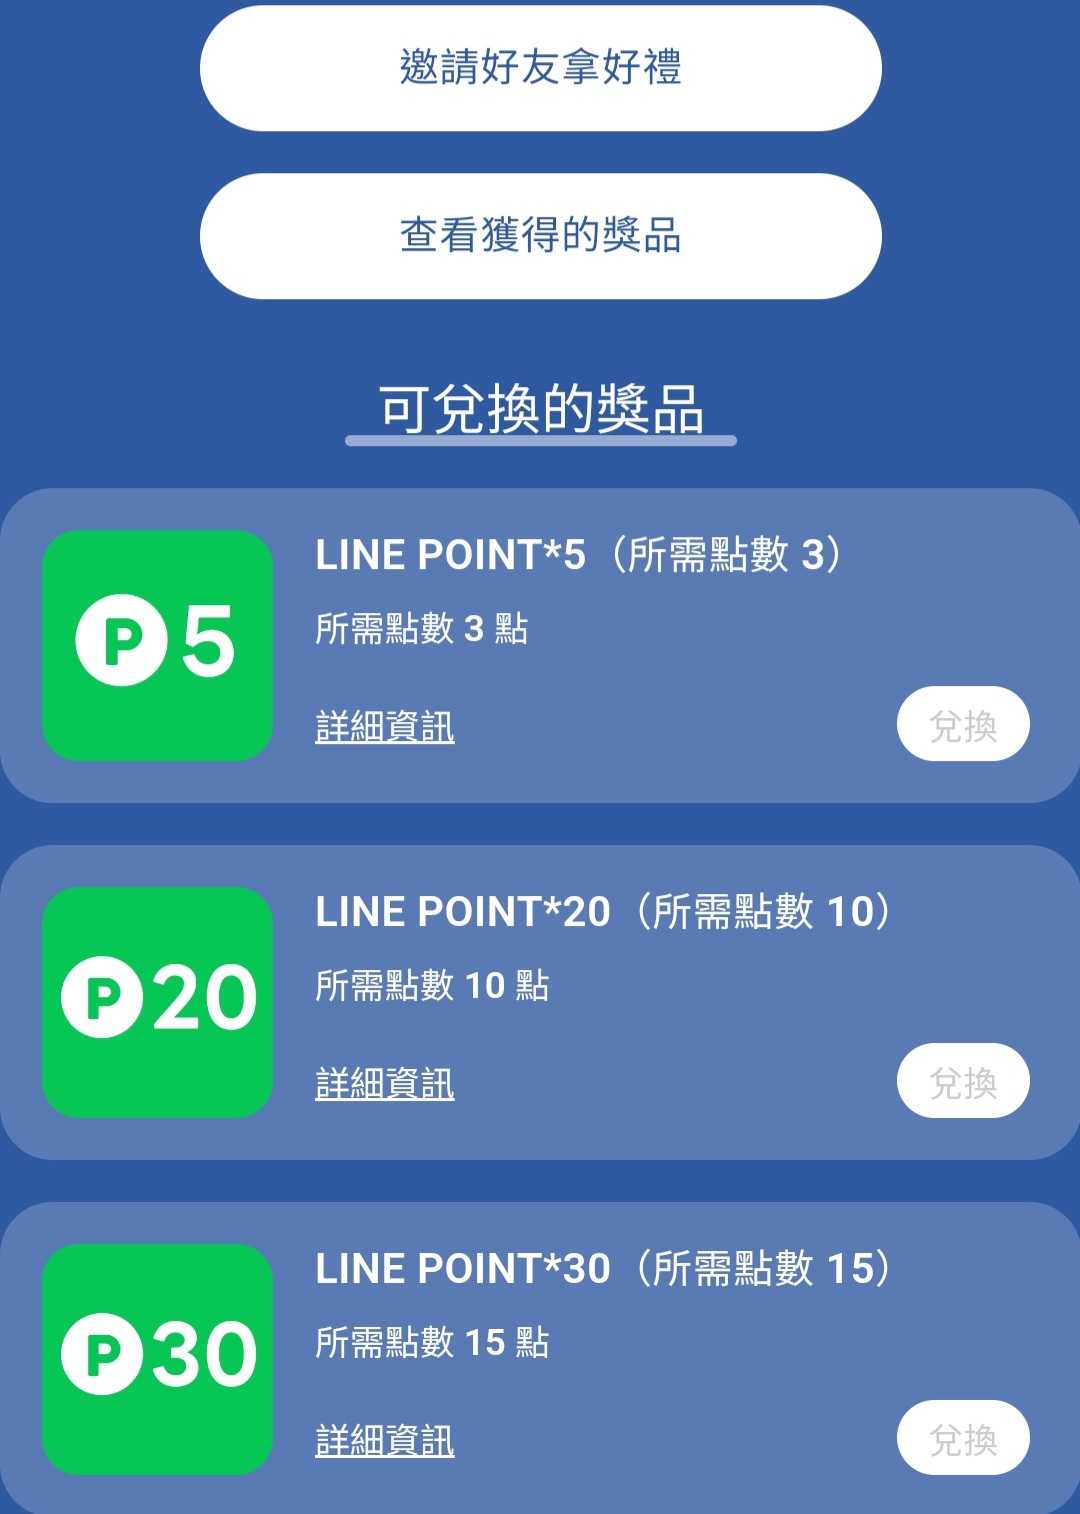 ELLE 活動免費換 Line points